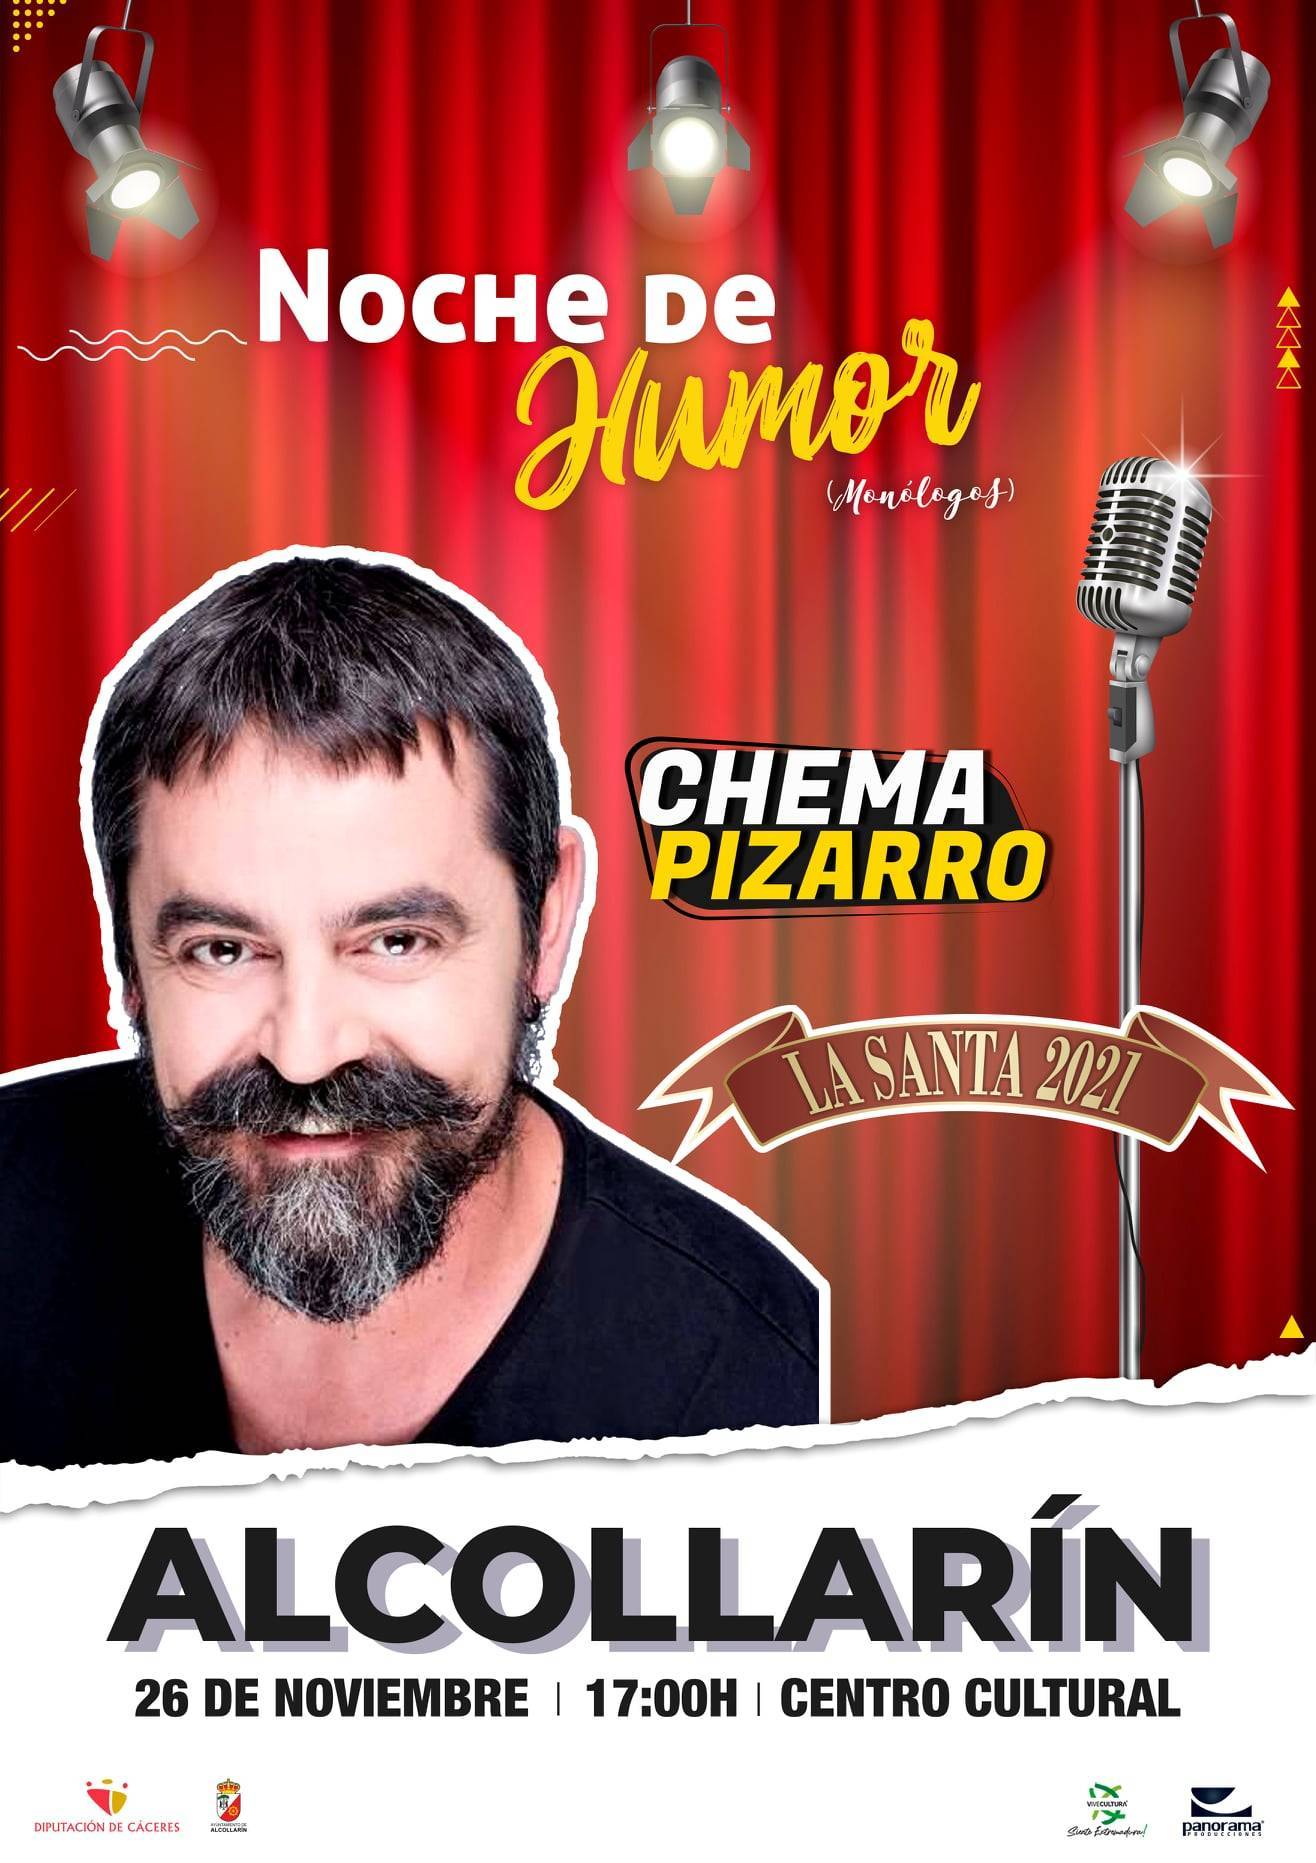 Chema Pizarro (2021) - Alcollarín (Cáceres)